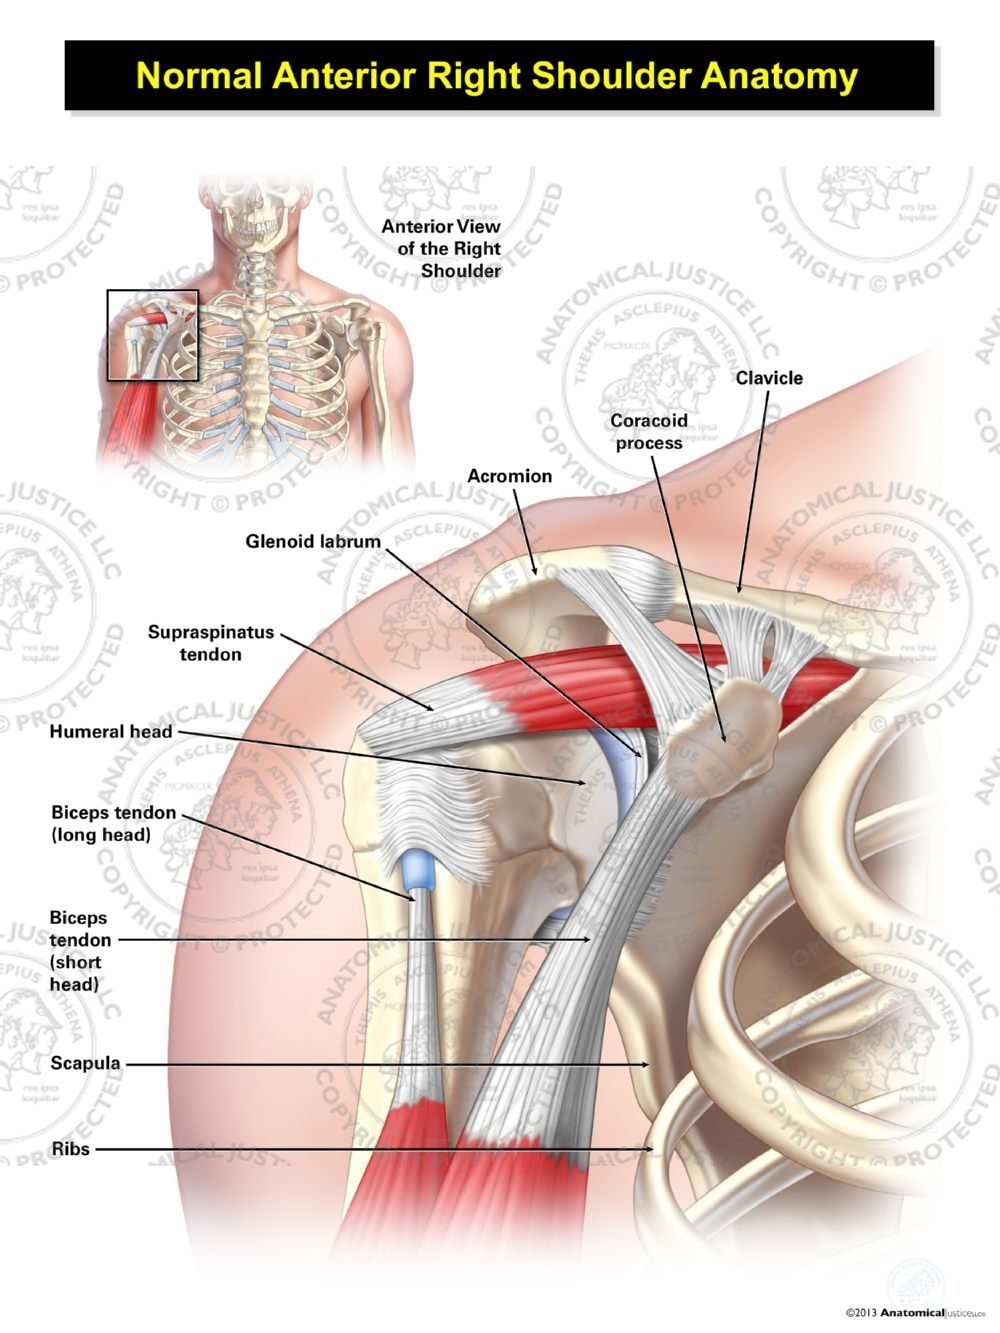 Normal Anterior Right Shoulder Anatomy